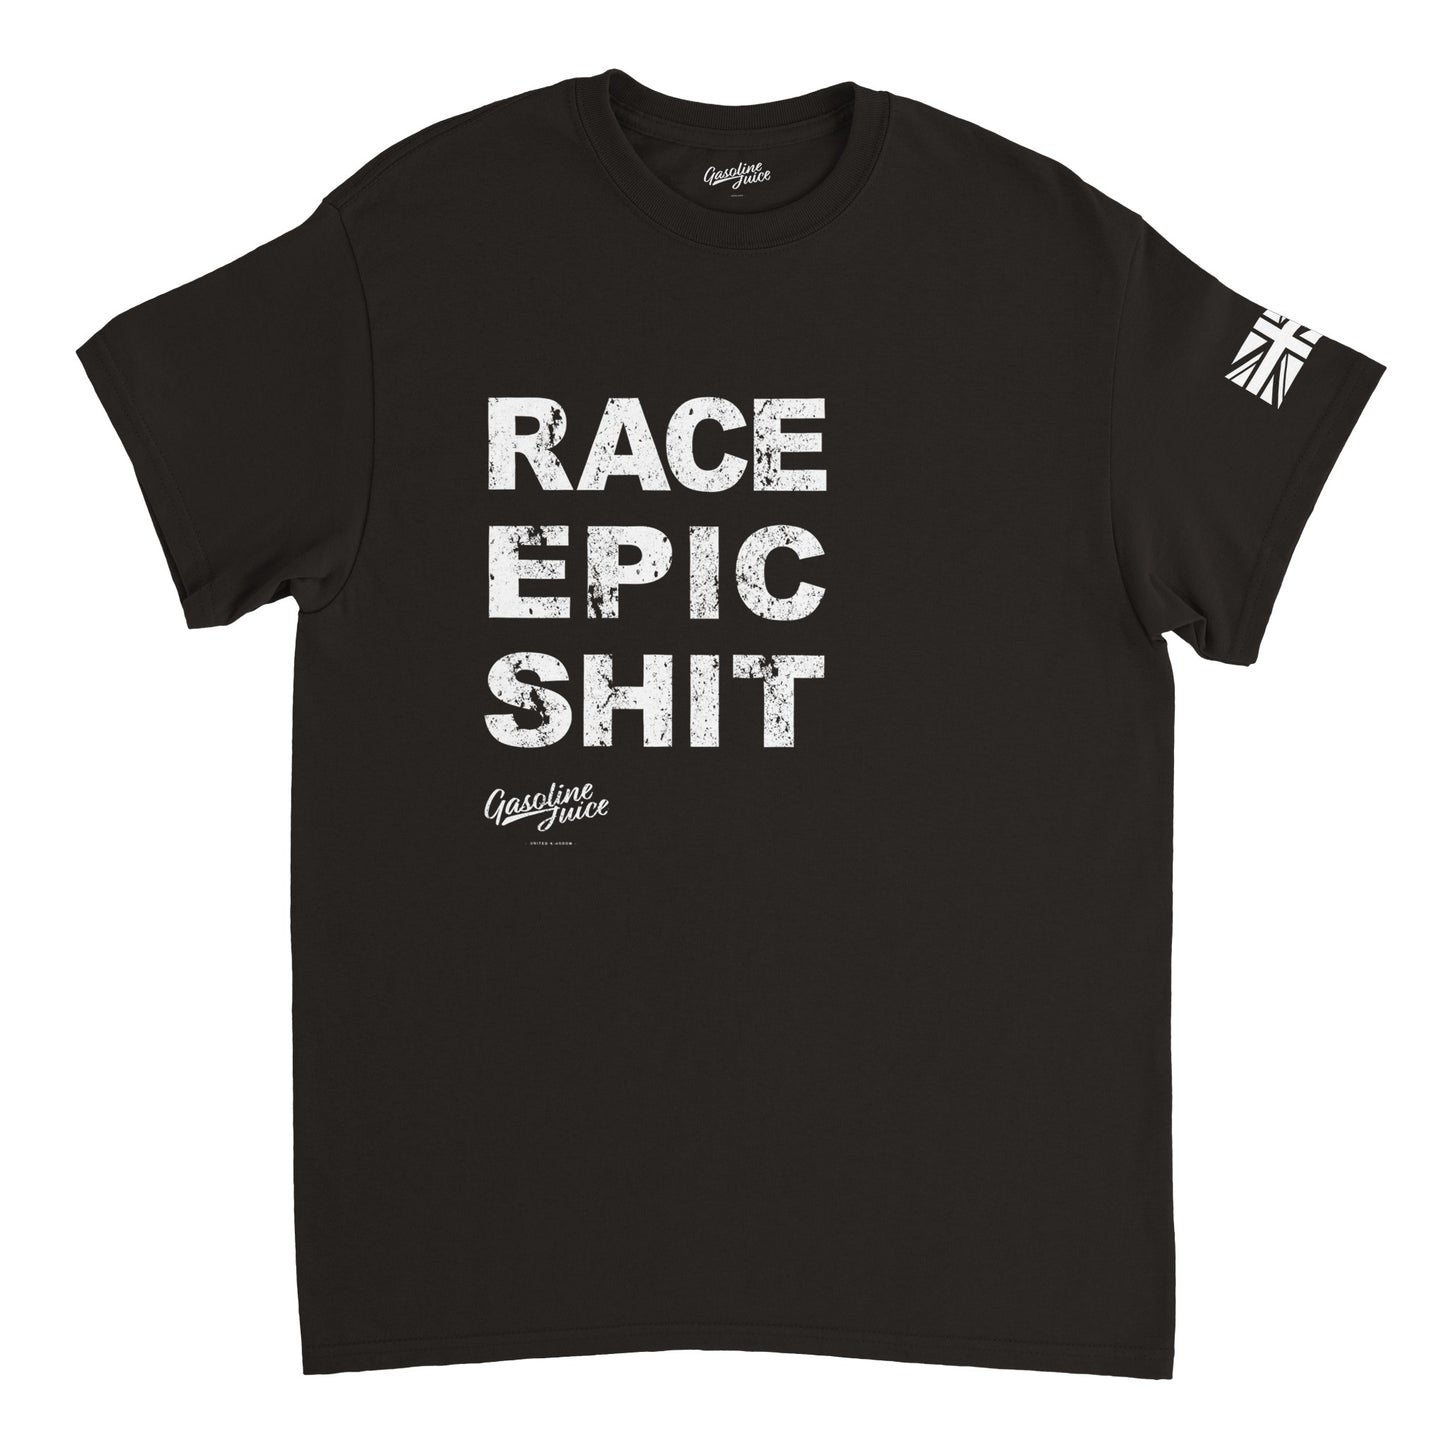 Classic Gasoline Juice Race EPIC SHIT t-shirt